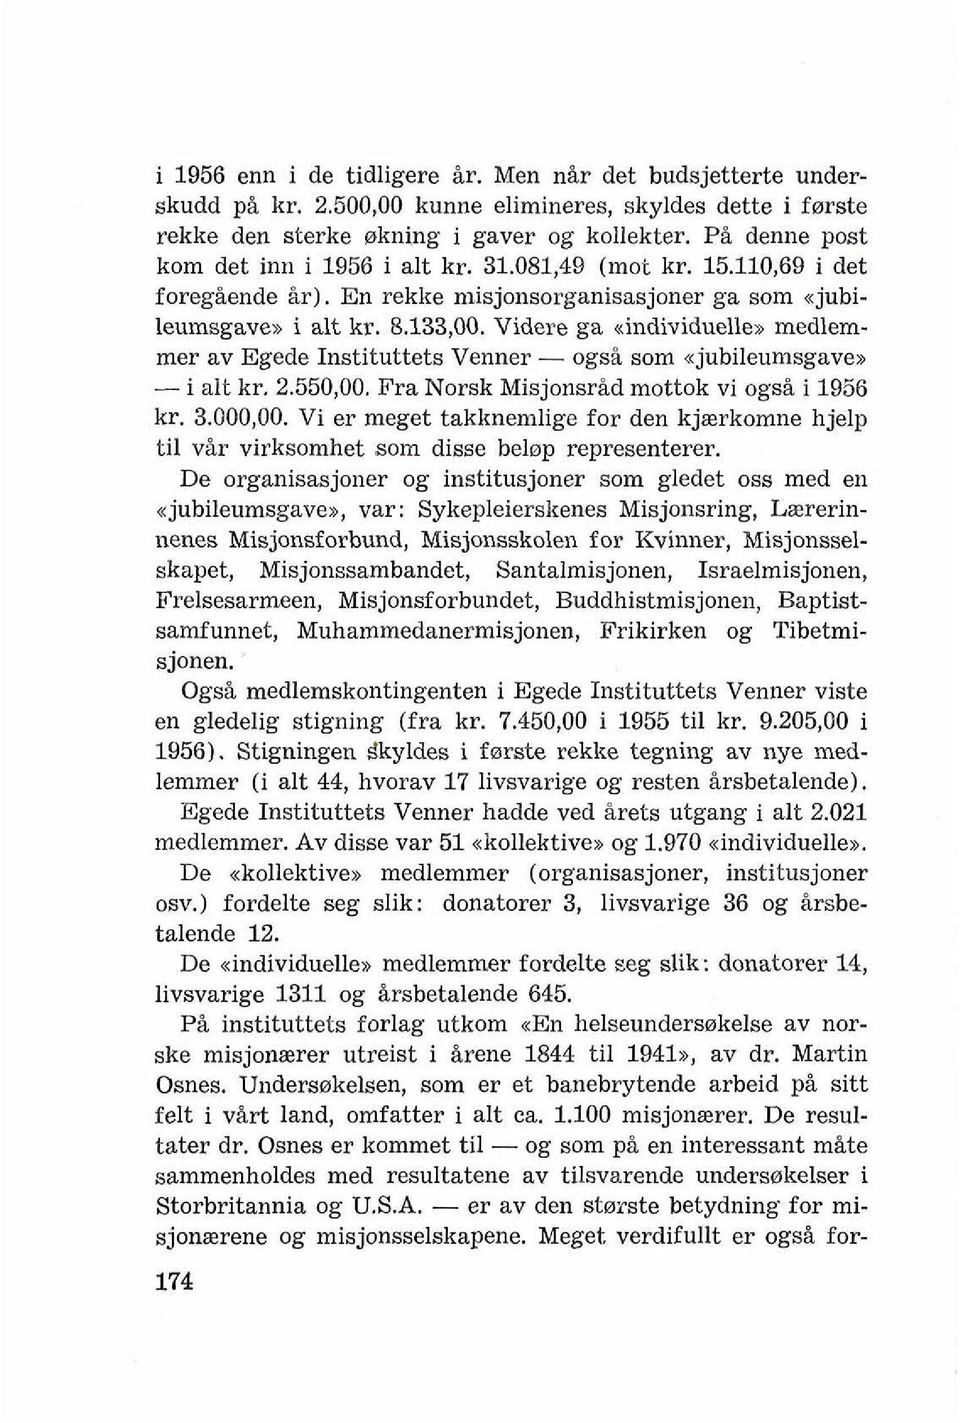 Videre ga ~individuelle,, medlemmer av Egede Instituttets Venner - ogsb som xjubileumsgavex - i alt kr. 2.550,00. Fra Norsk MisjonsrBd mottok vi ogsb i 1956 kr. 3.000,OO.